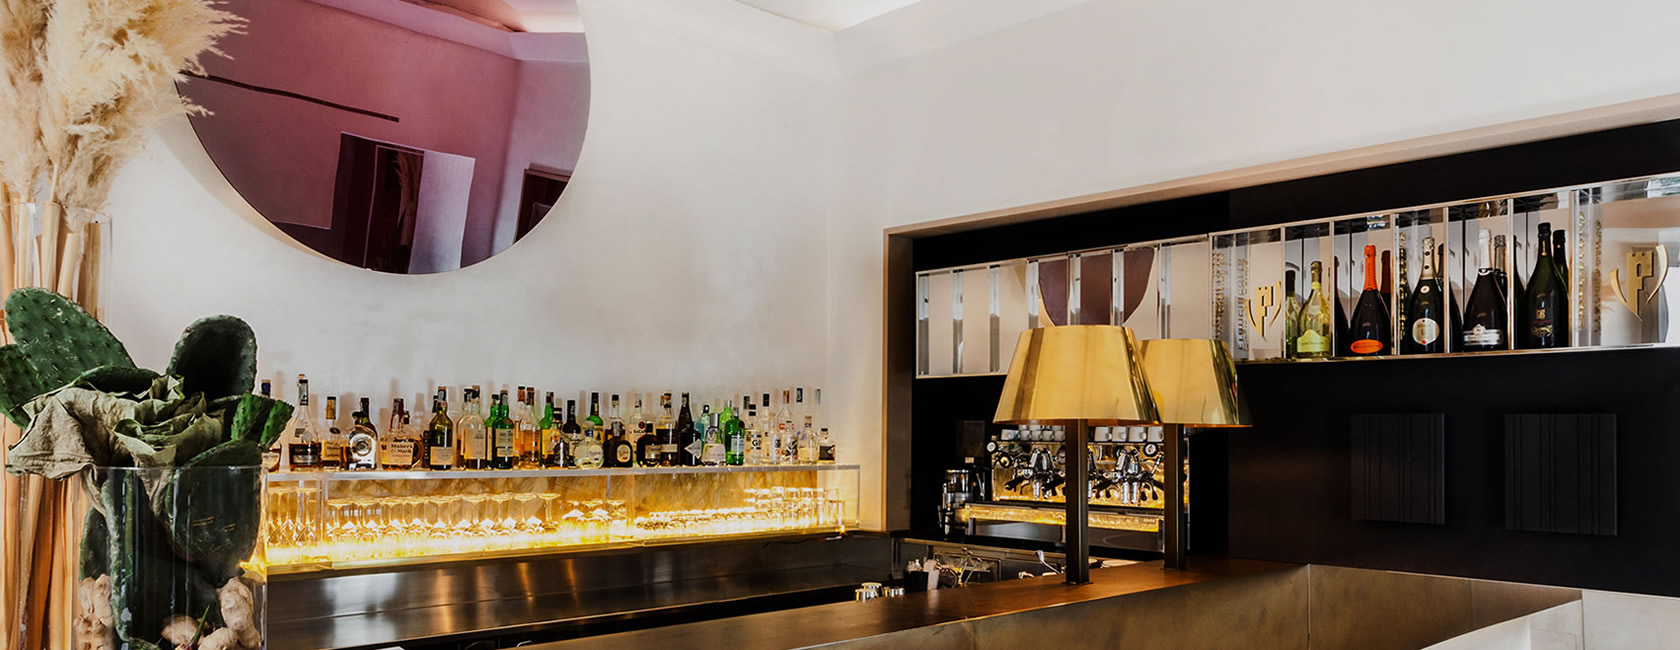 Franciacorta Bar interiors in Senato Hotel Milano